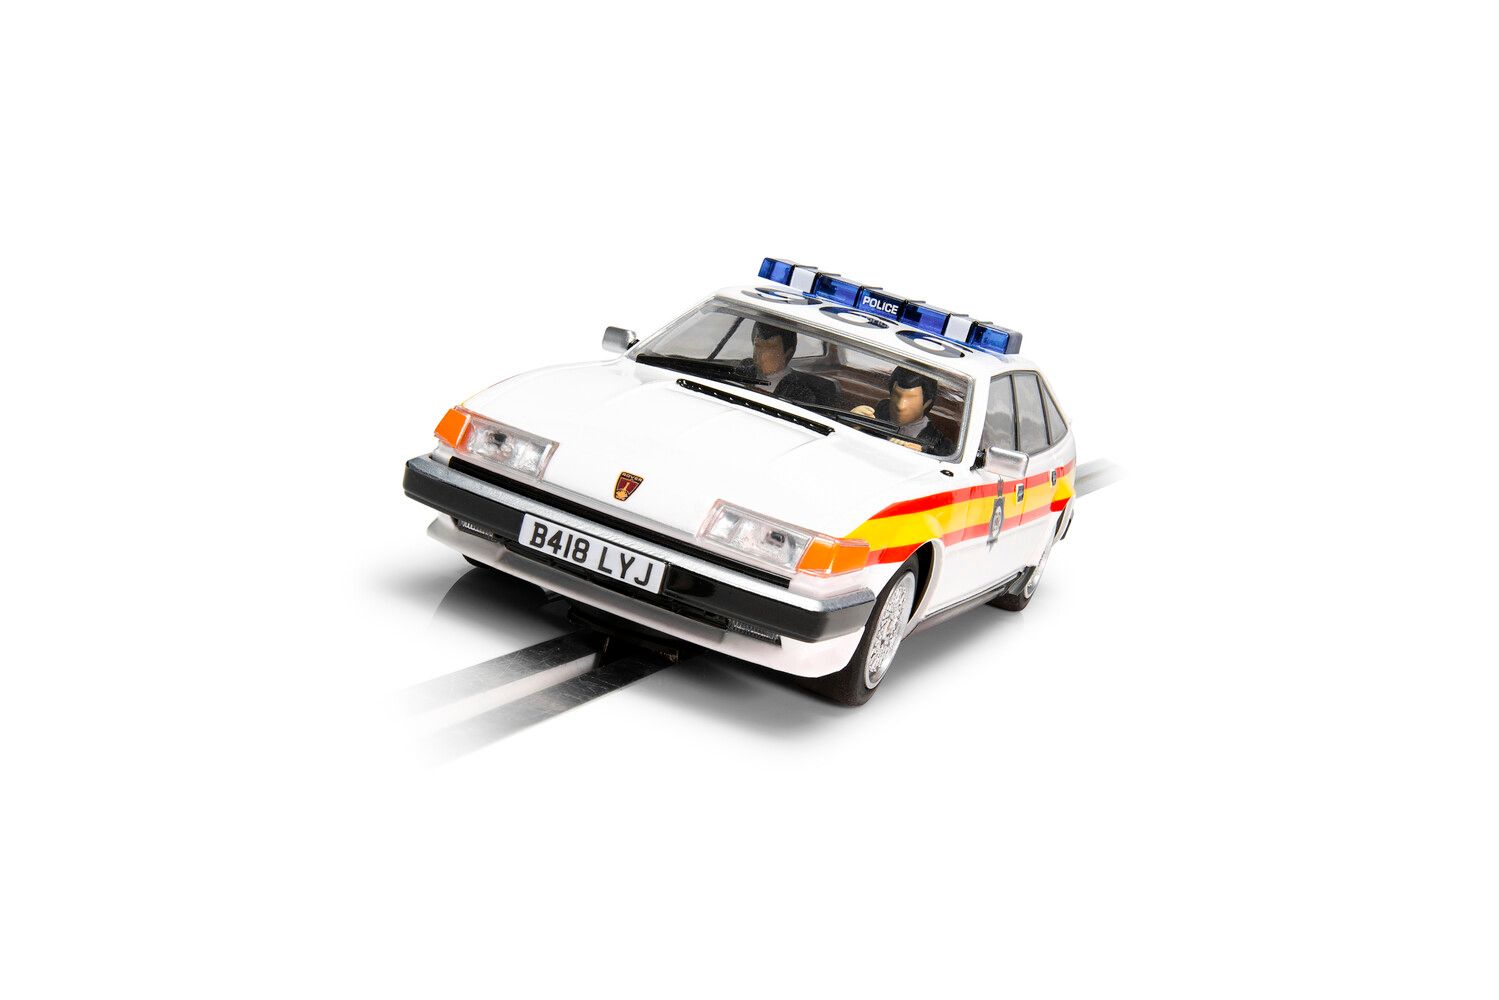 Rover SD1 - Police Edition - C4342